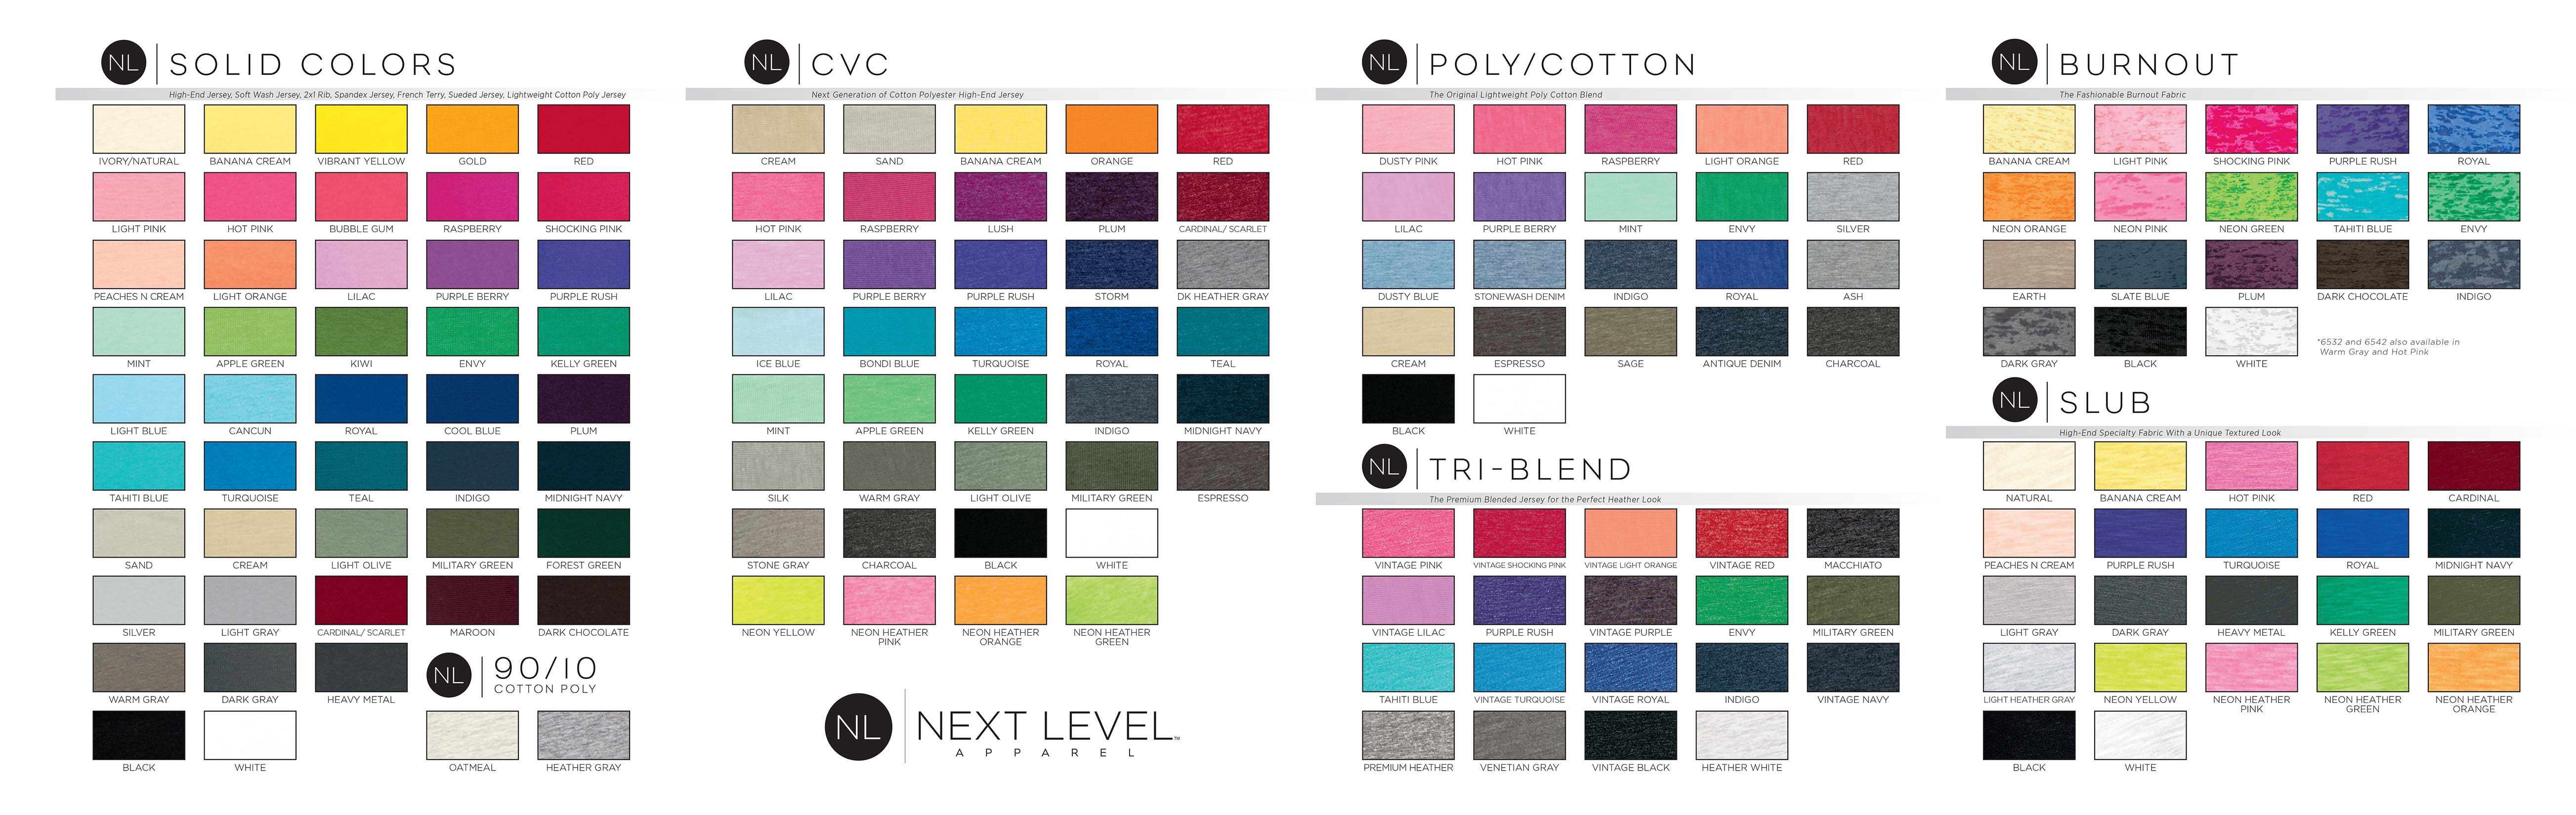 Next Level 6051 Color Chart